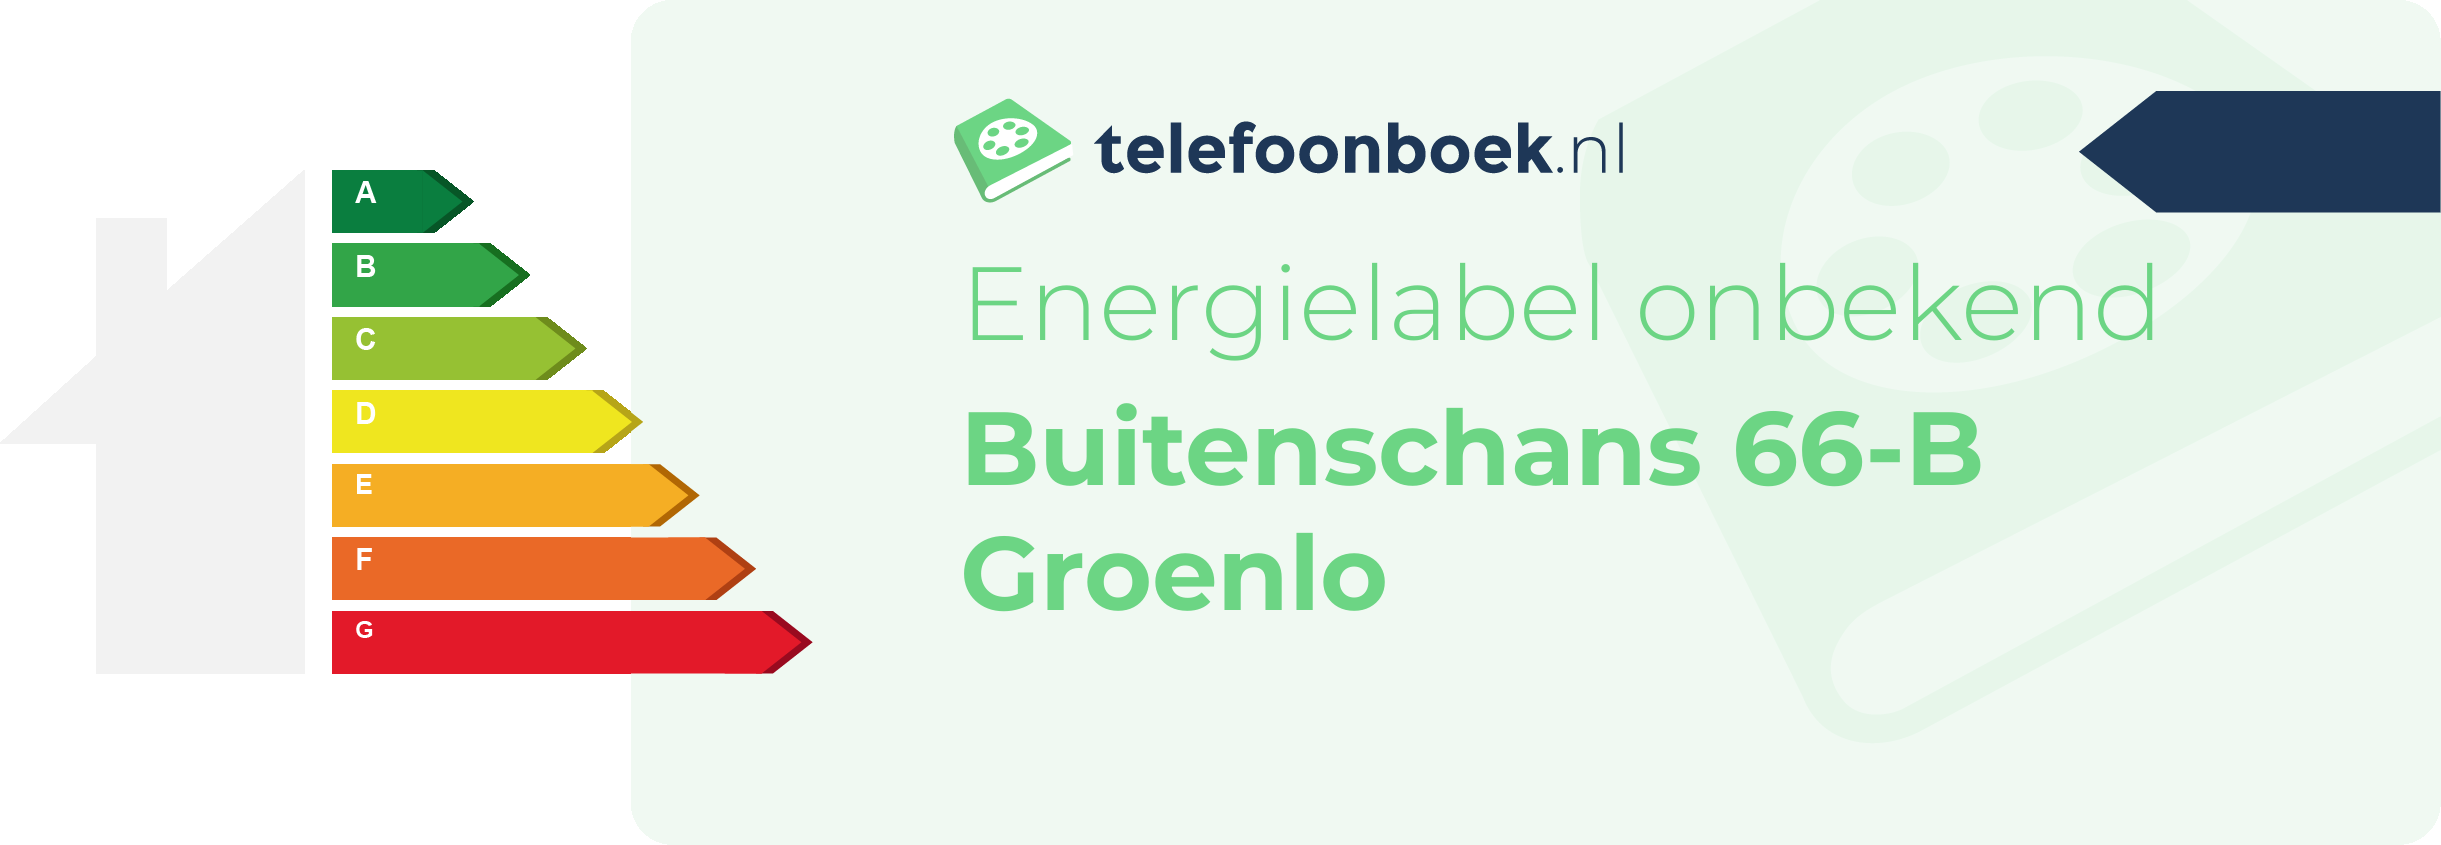 Energielabel Buitenschans 66-B Groenlo